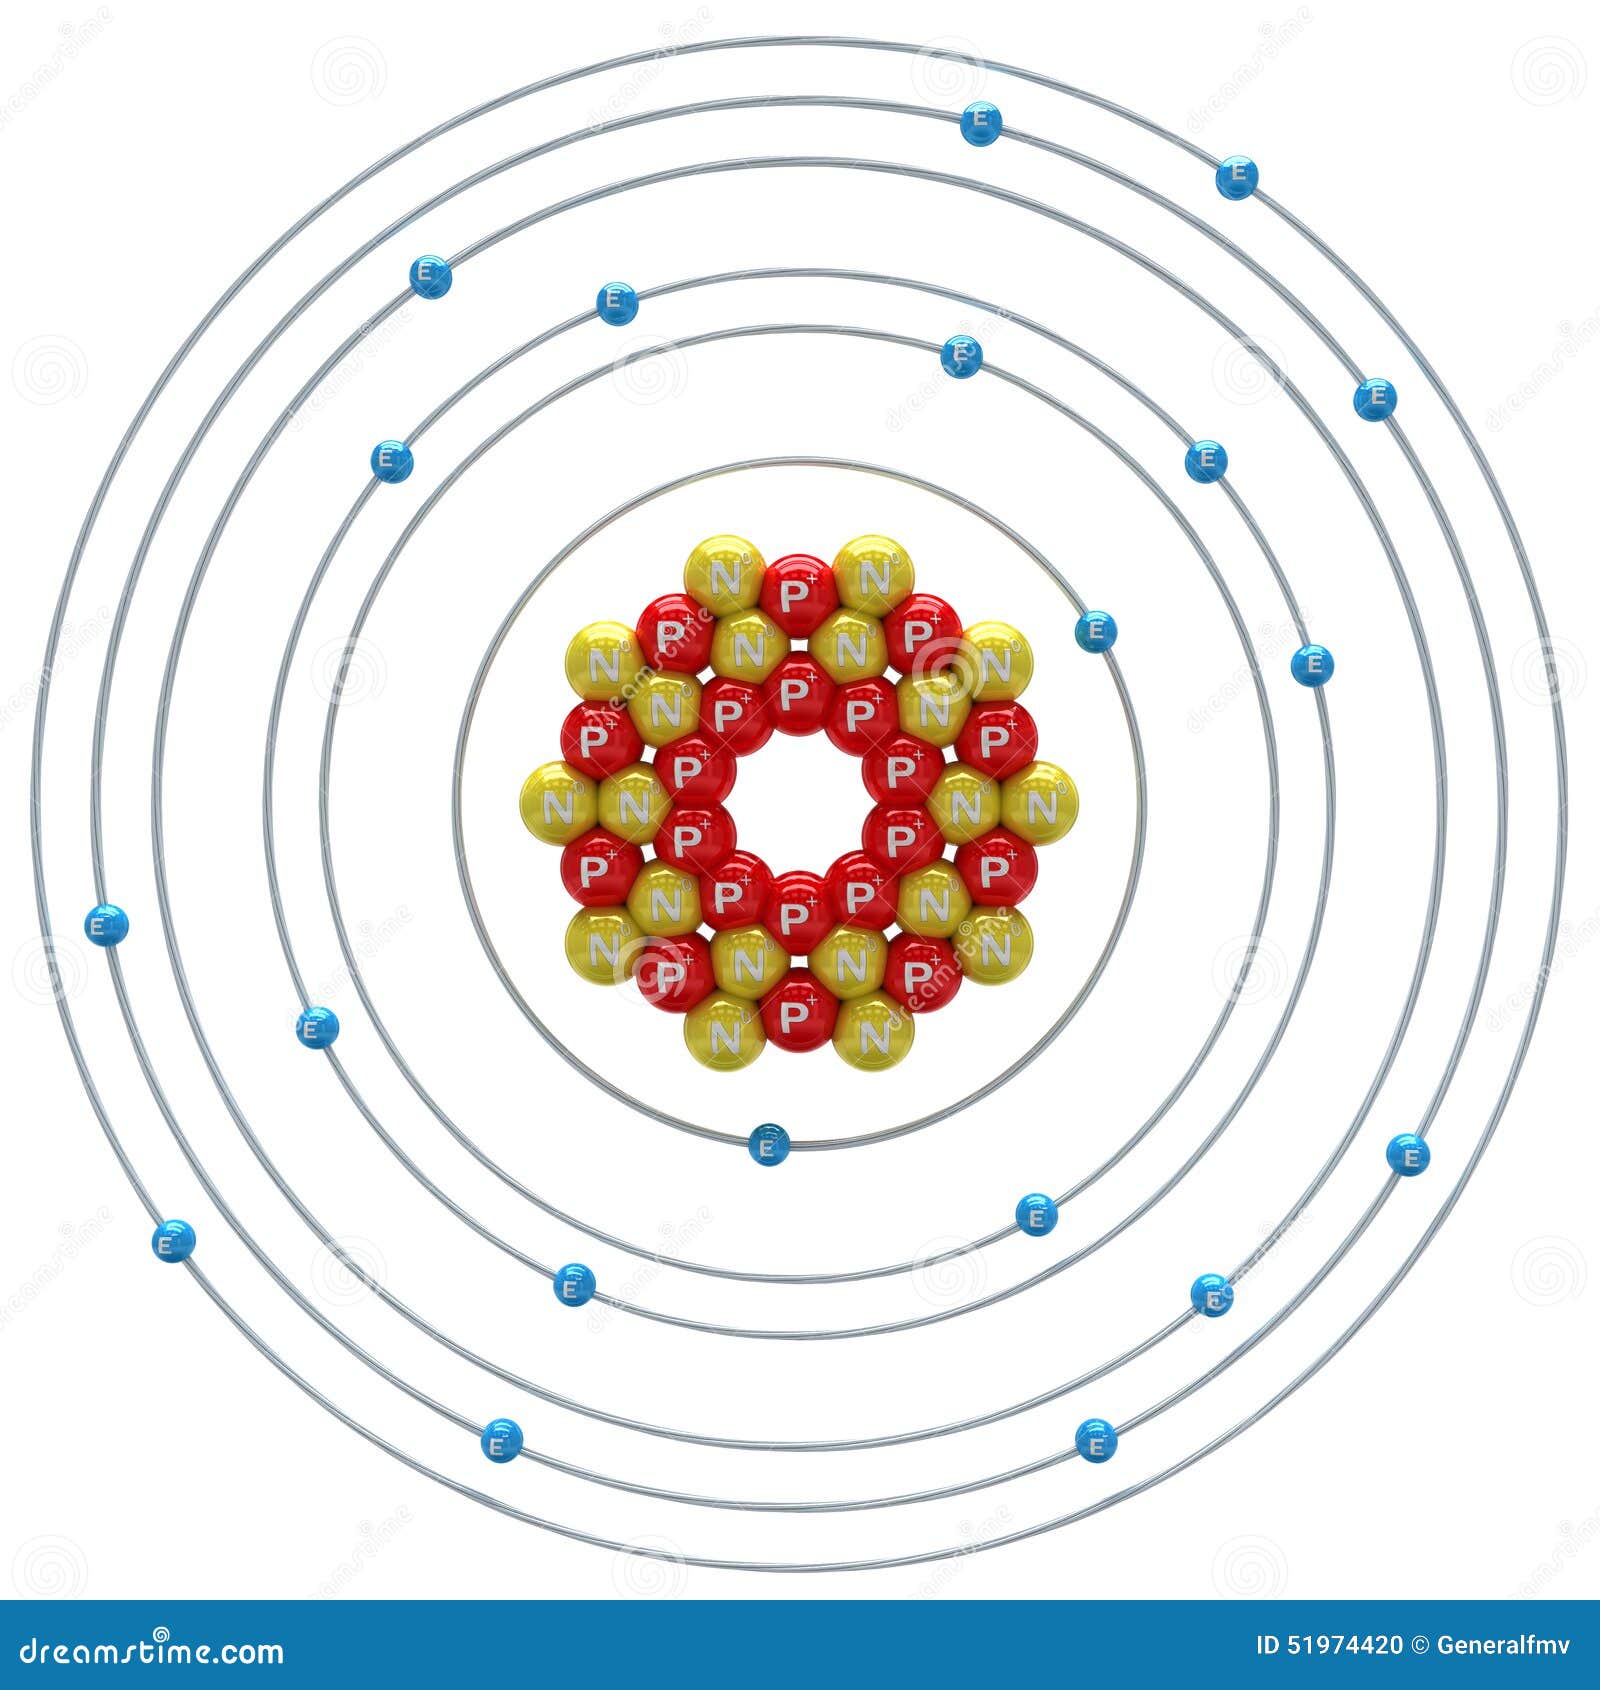 Изобразите строение атома кальция. Модель атома кальция рисунок. Атом кальция. Модель атома CA. Планетарная модель атома кальция.